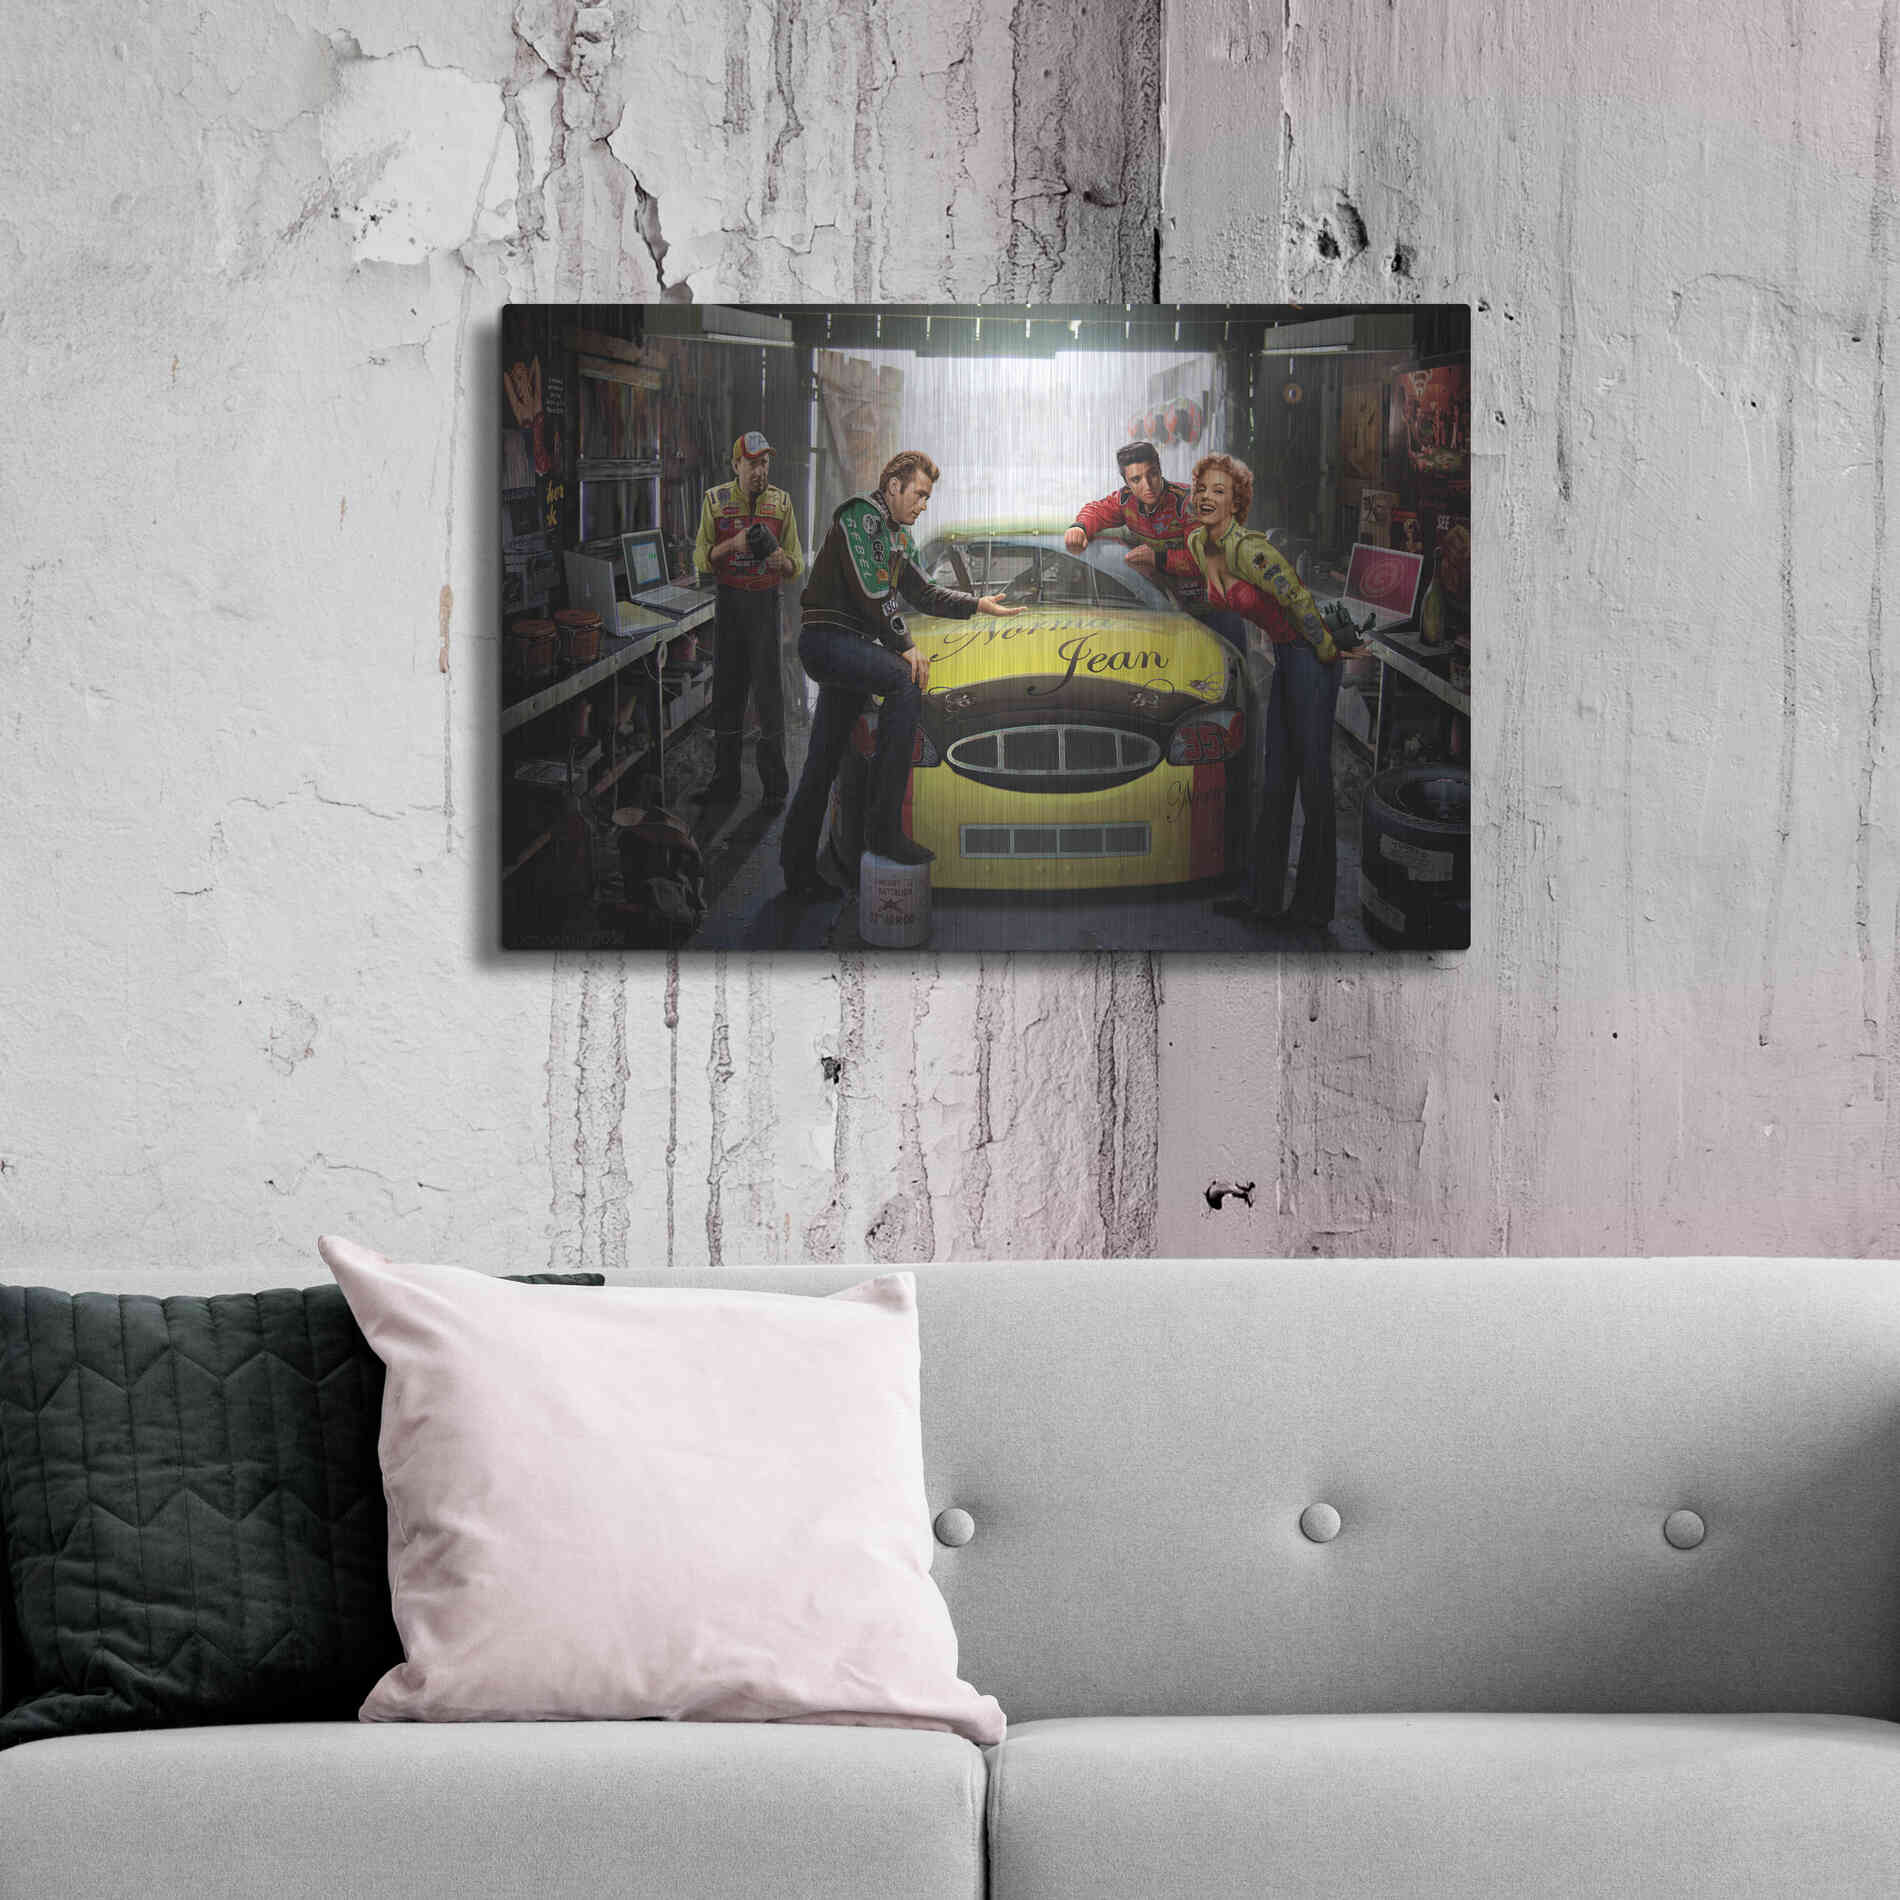 Luxe Metal Art 'Eternal Speedway' by Chris Consani, Metal Wall Art,36x24